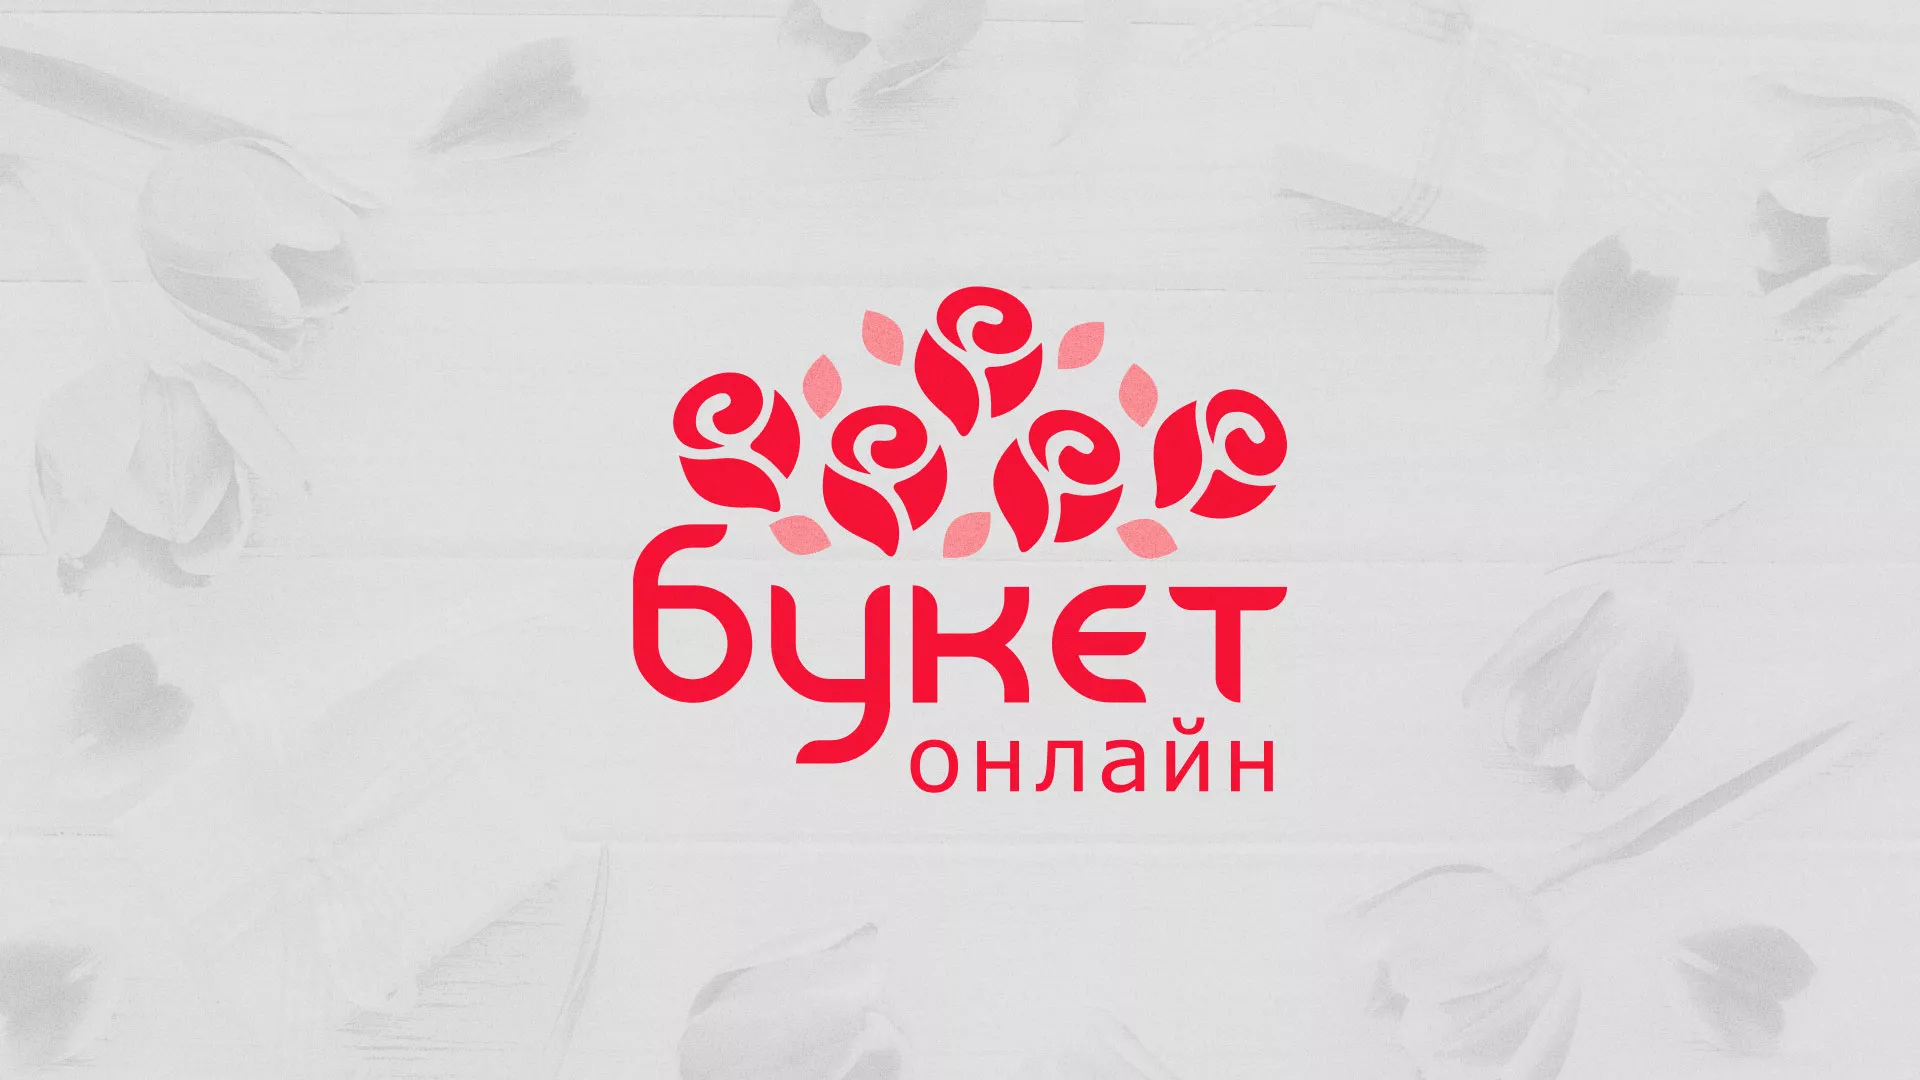 Создание интернет-магазина «Букет-онлайн» по цветам в Пушкино